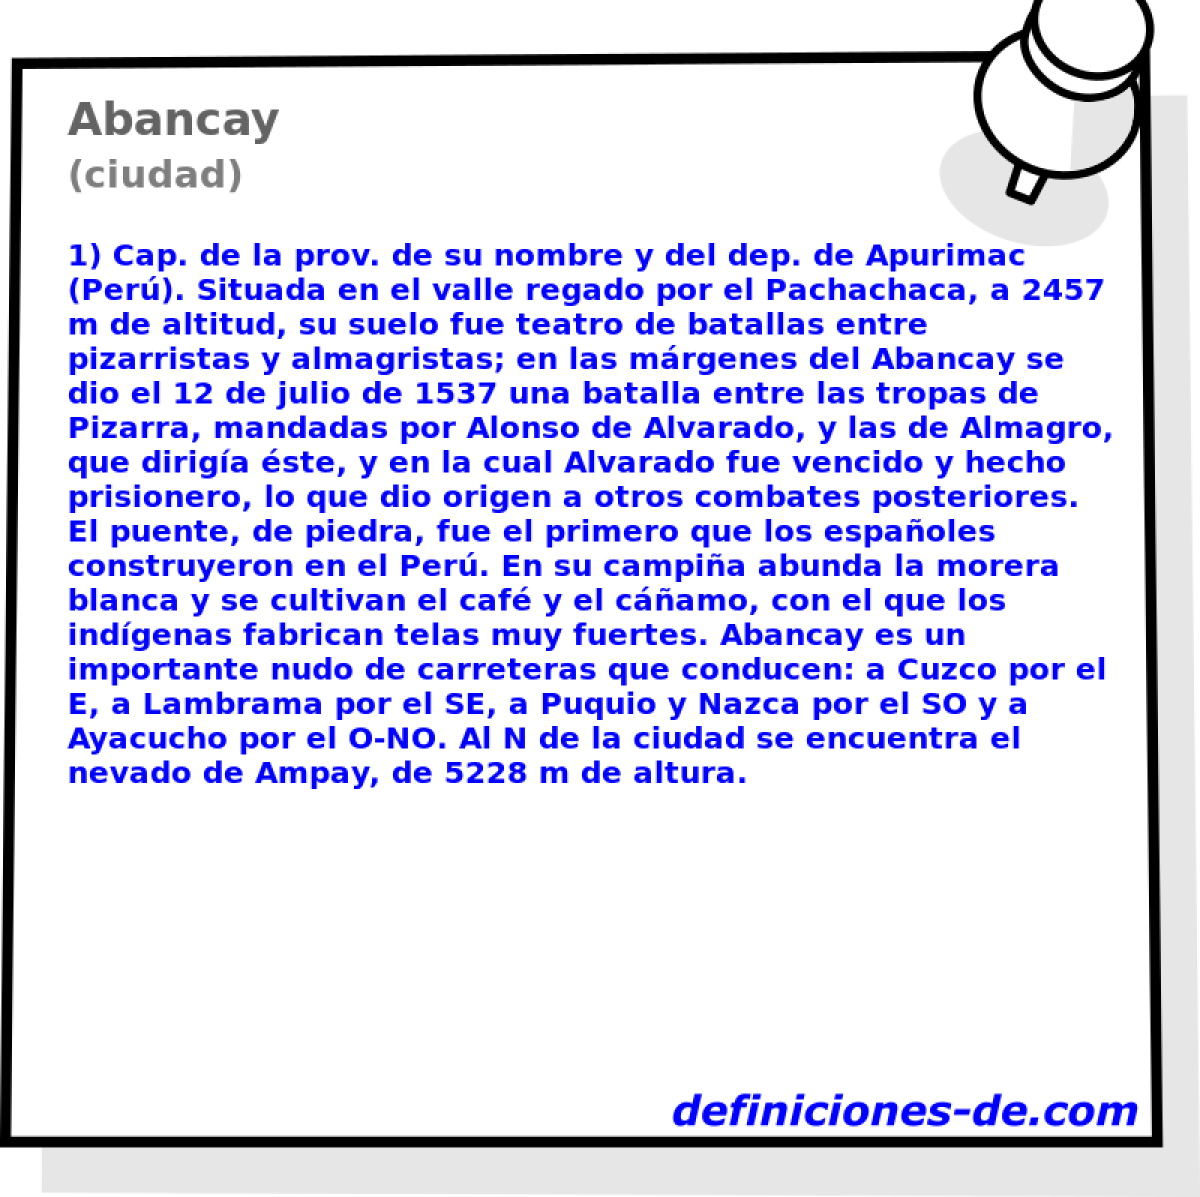 Abancay (ciudad)